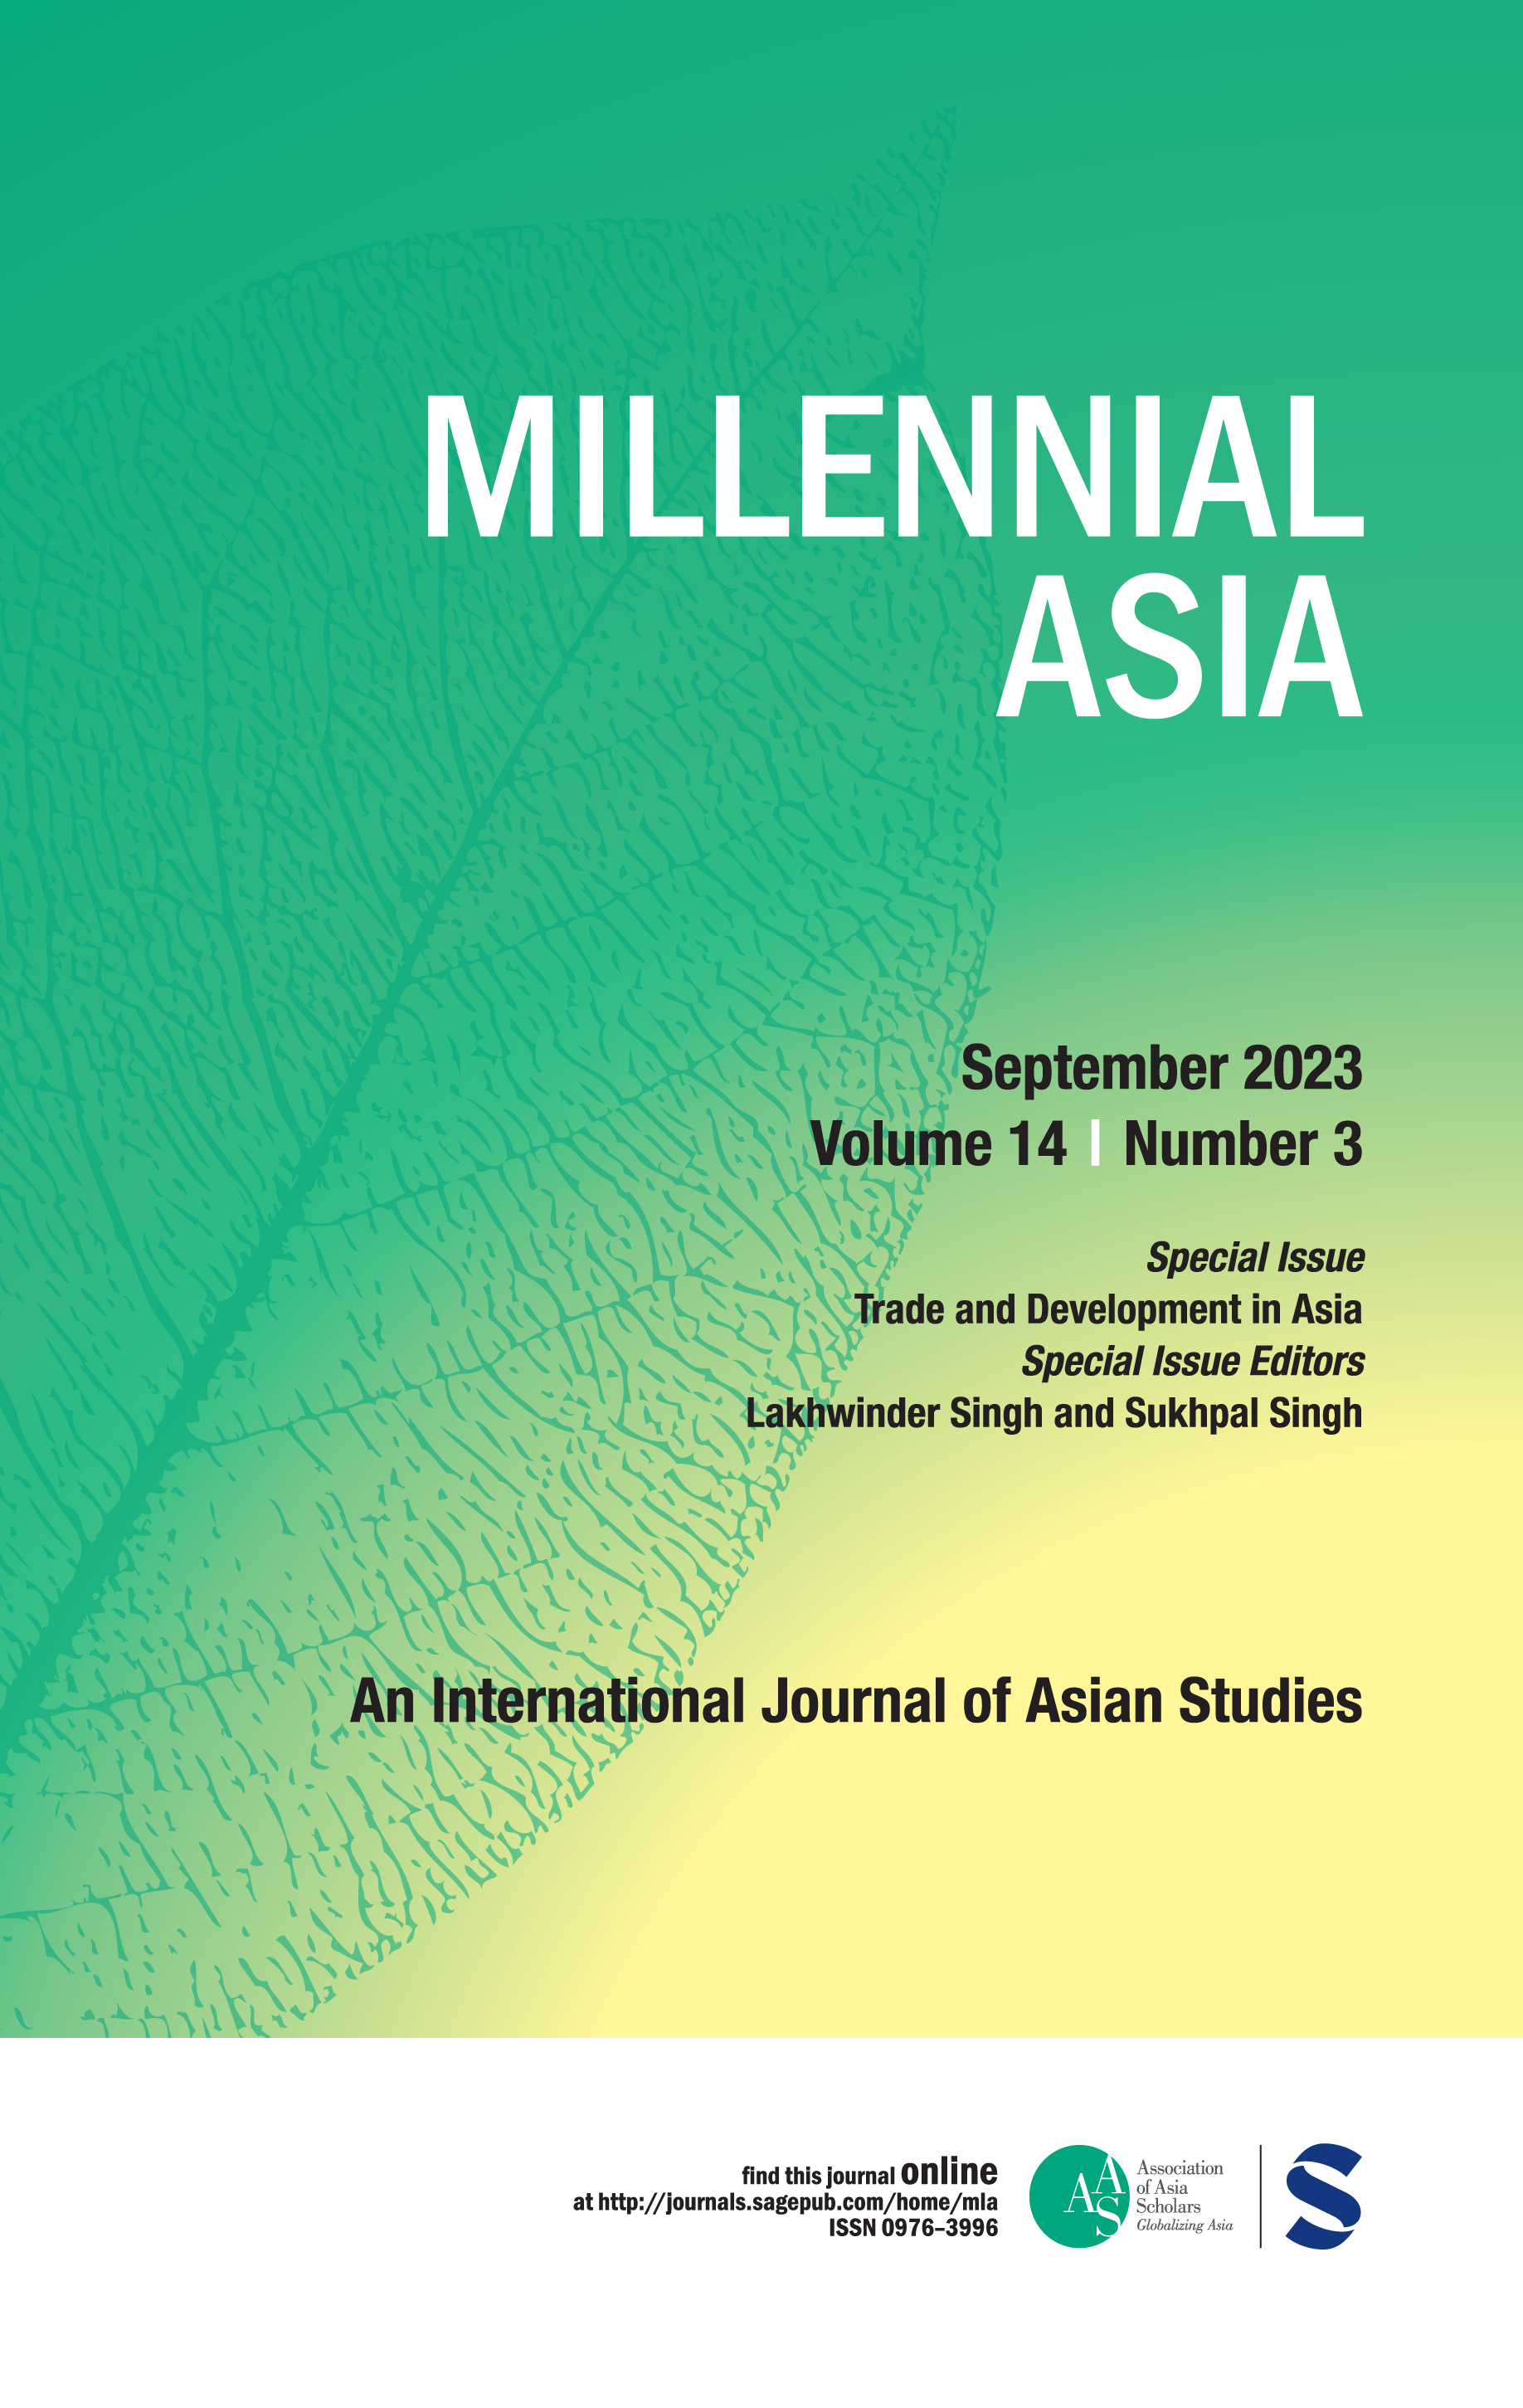 Millennial Asia an international journal of Asian studies.